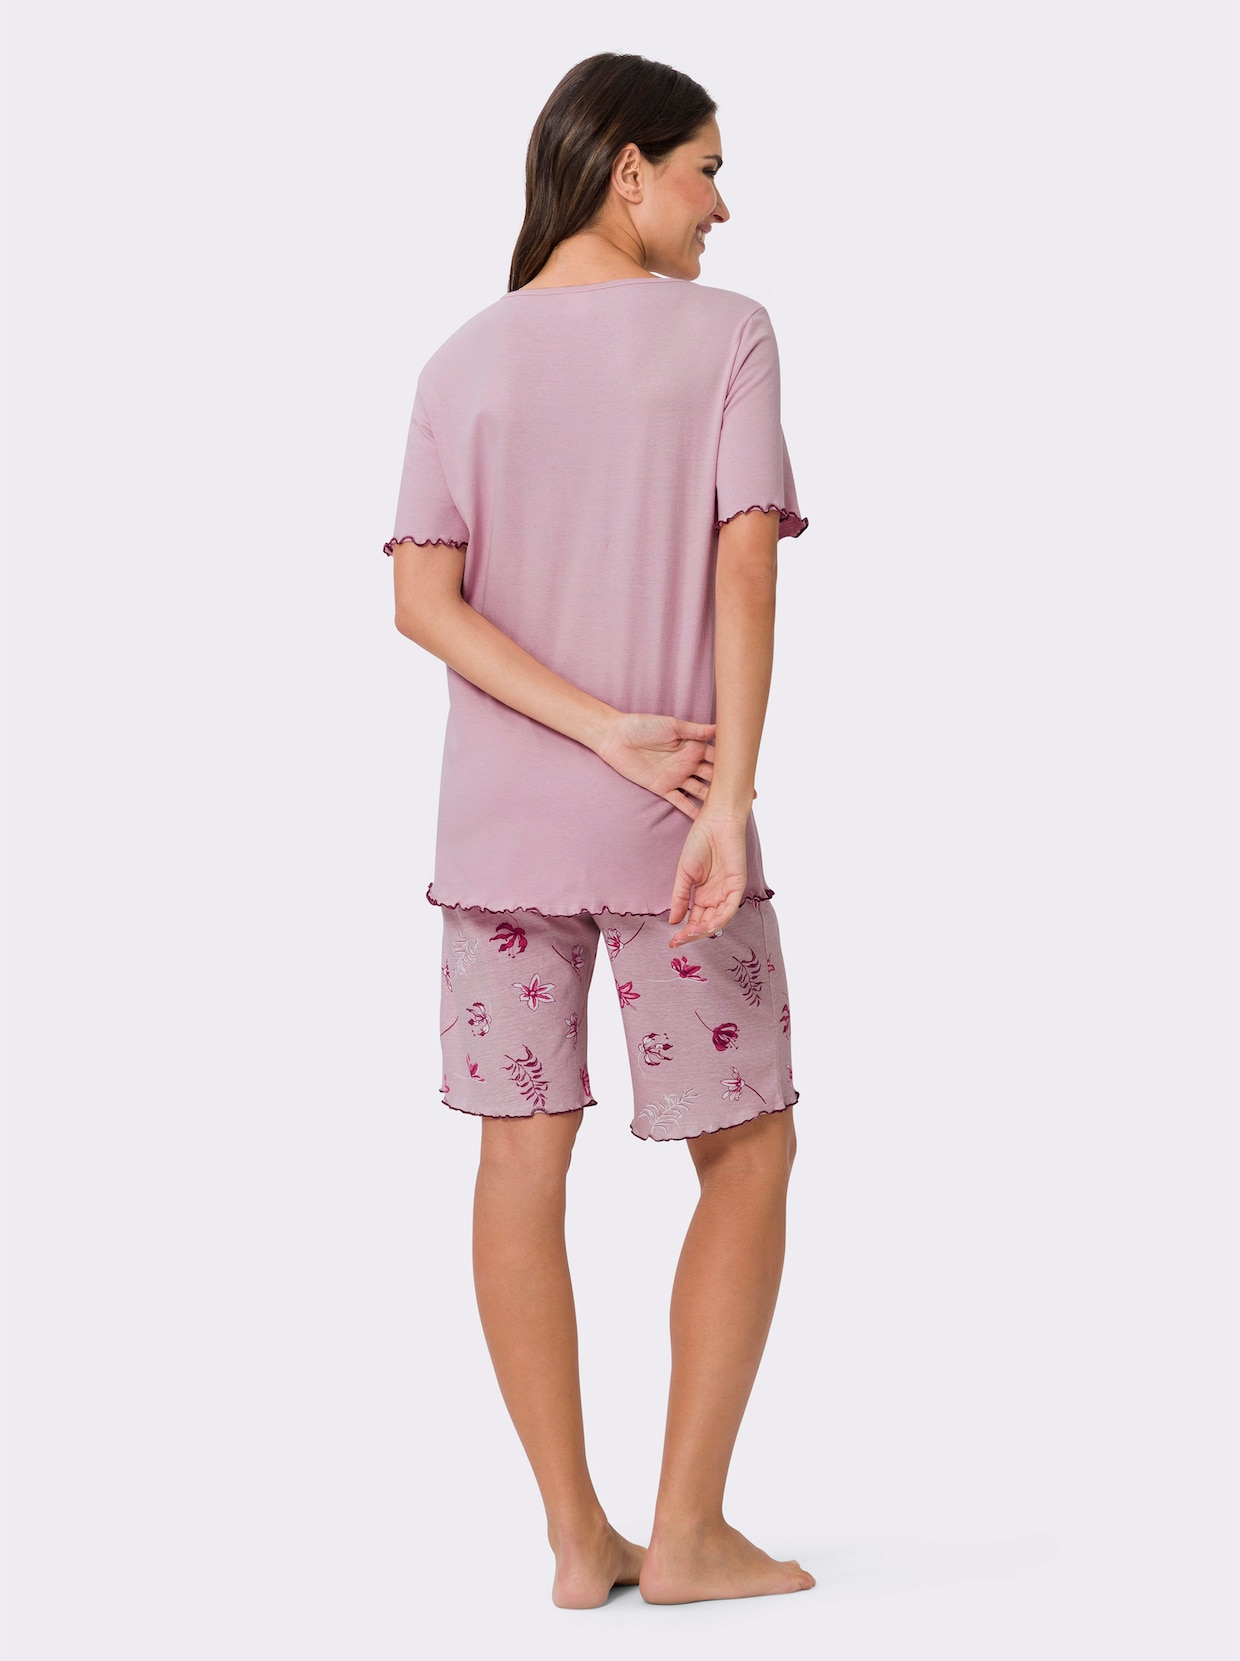 Kortärmad pyjamas - ljusrosa, tryckt